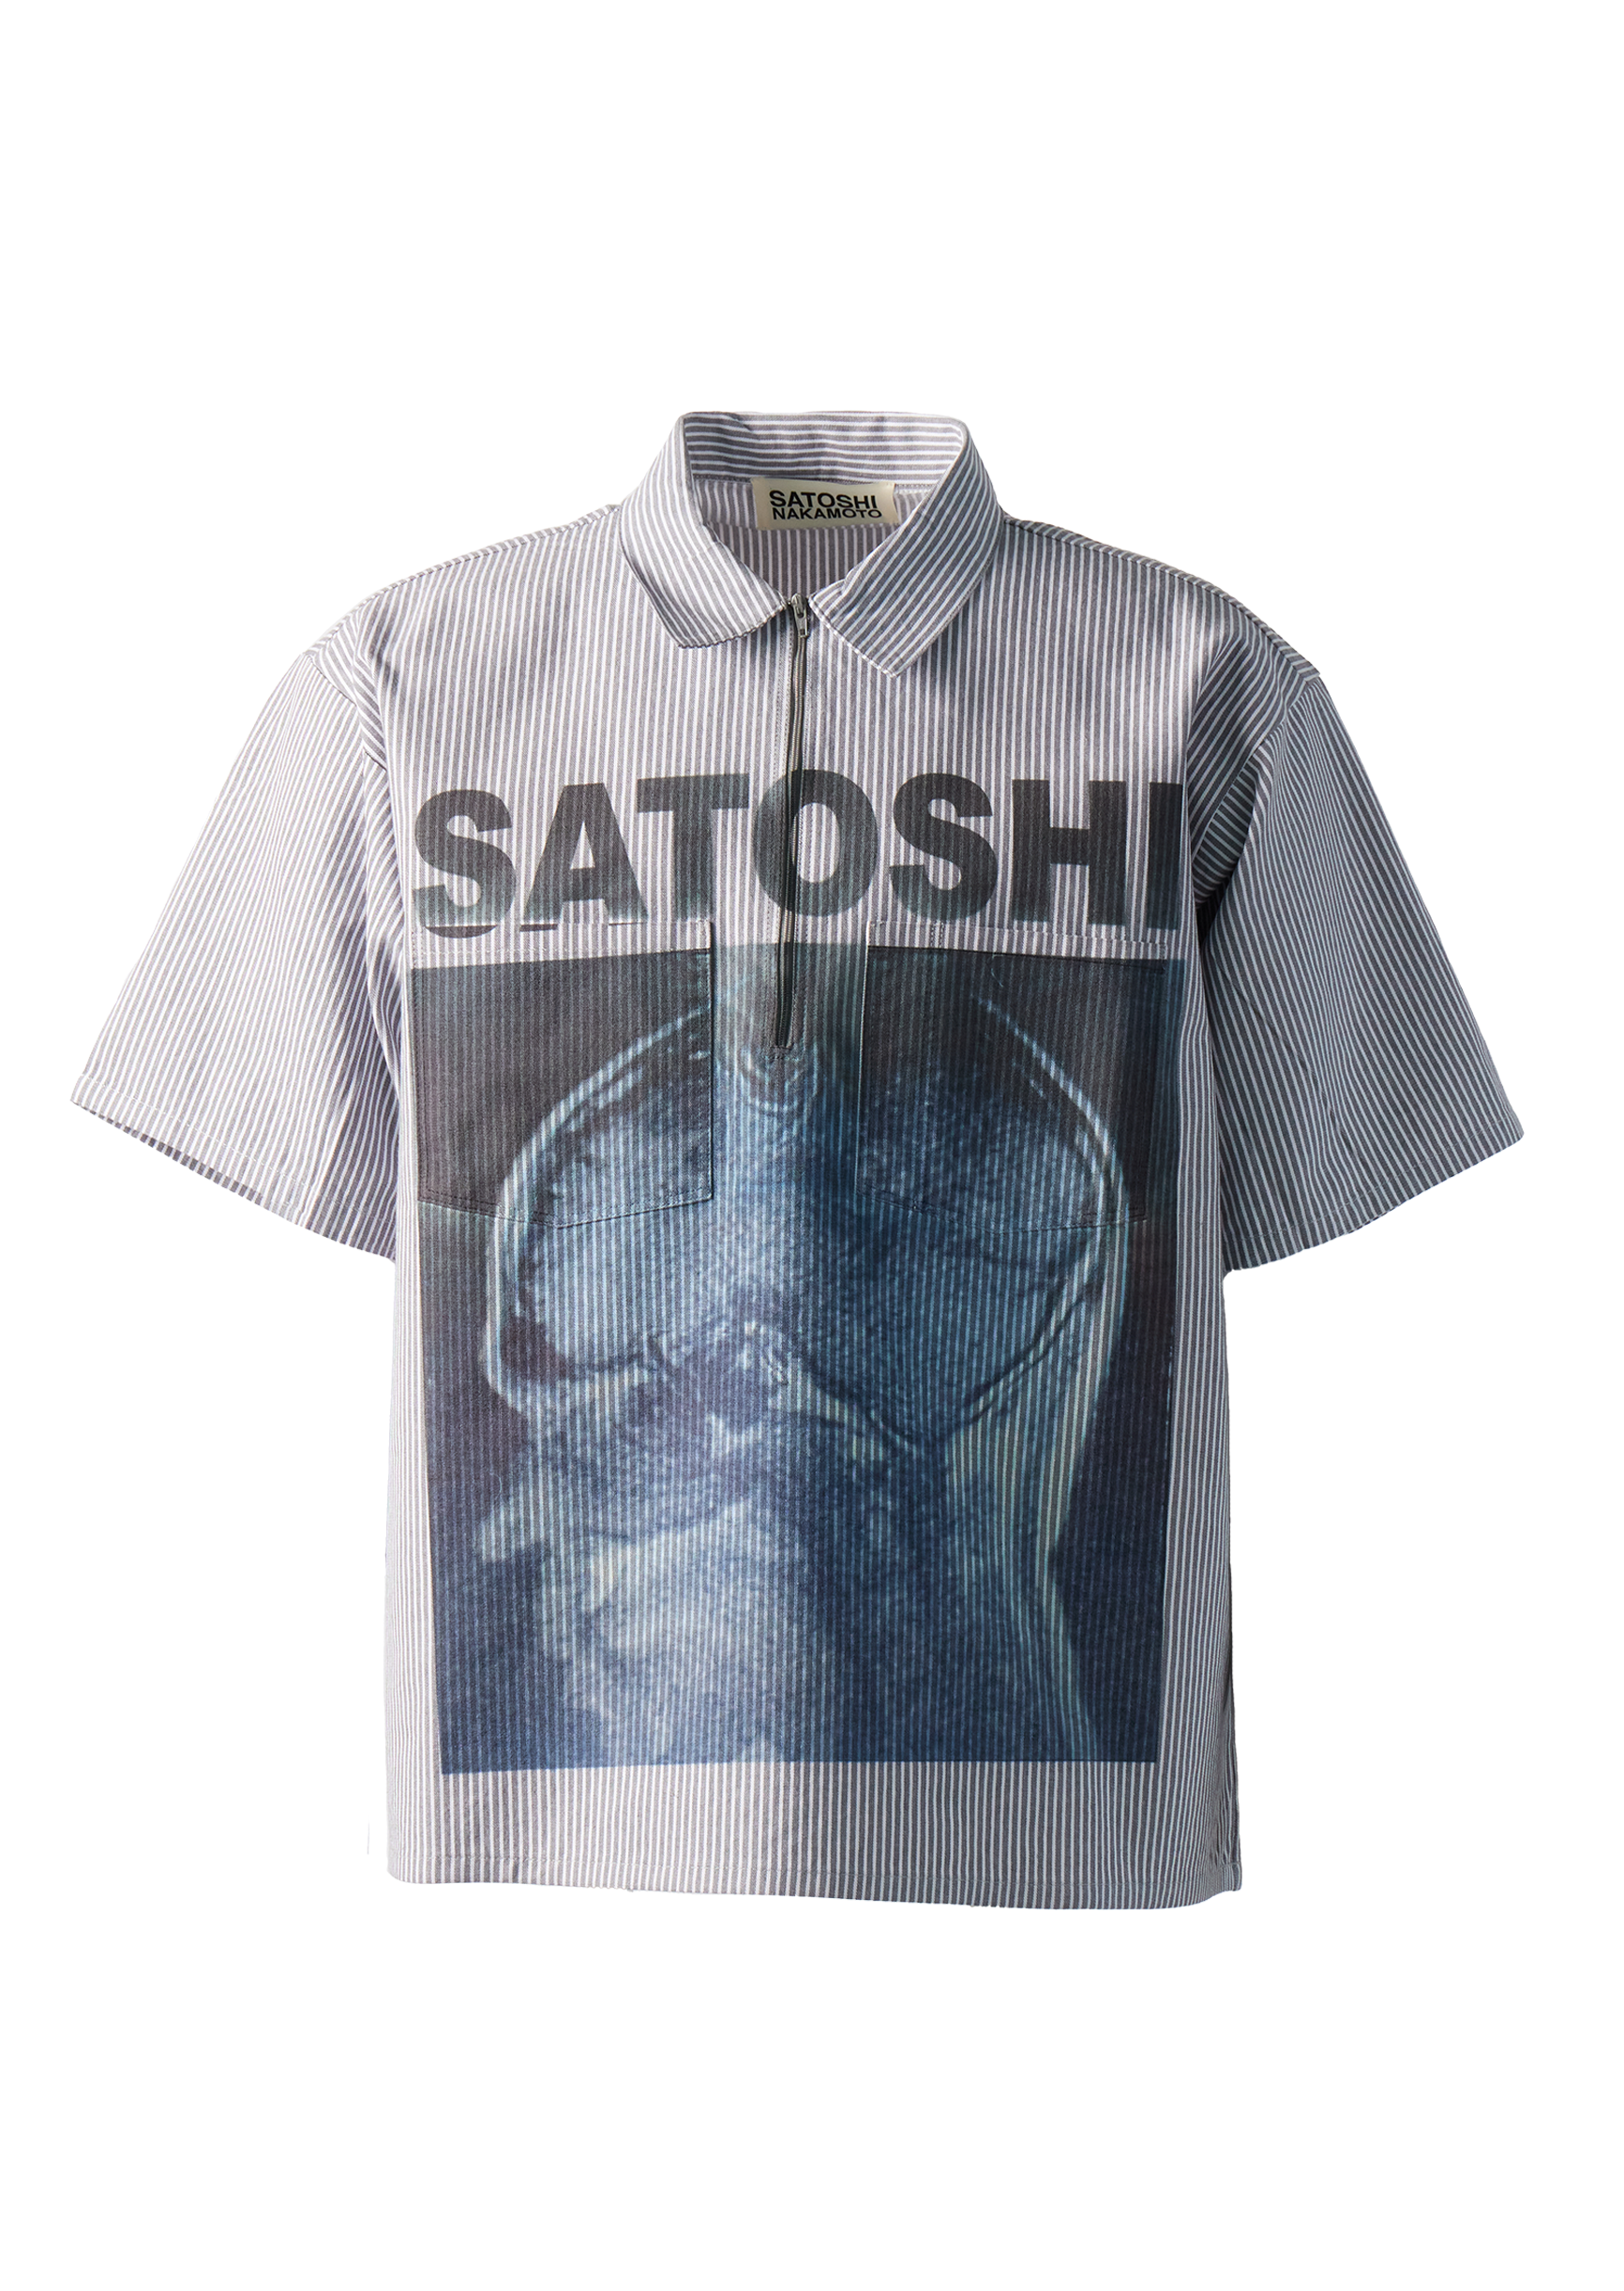 SATOSHI NAKAMOTO - A Lot on My Mind Workshirt product image